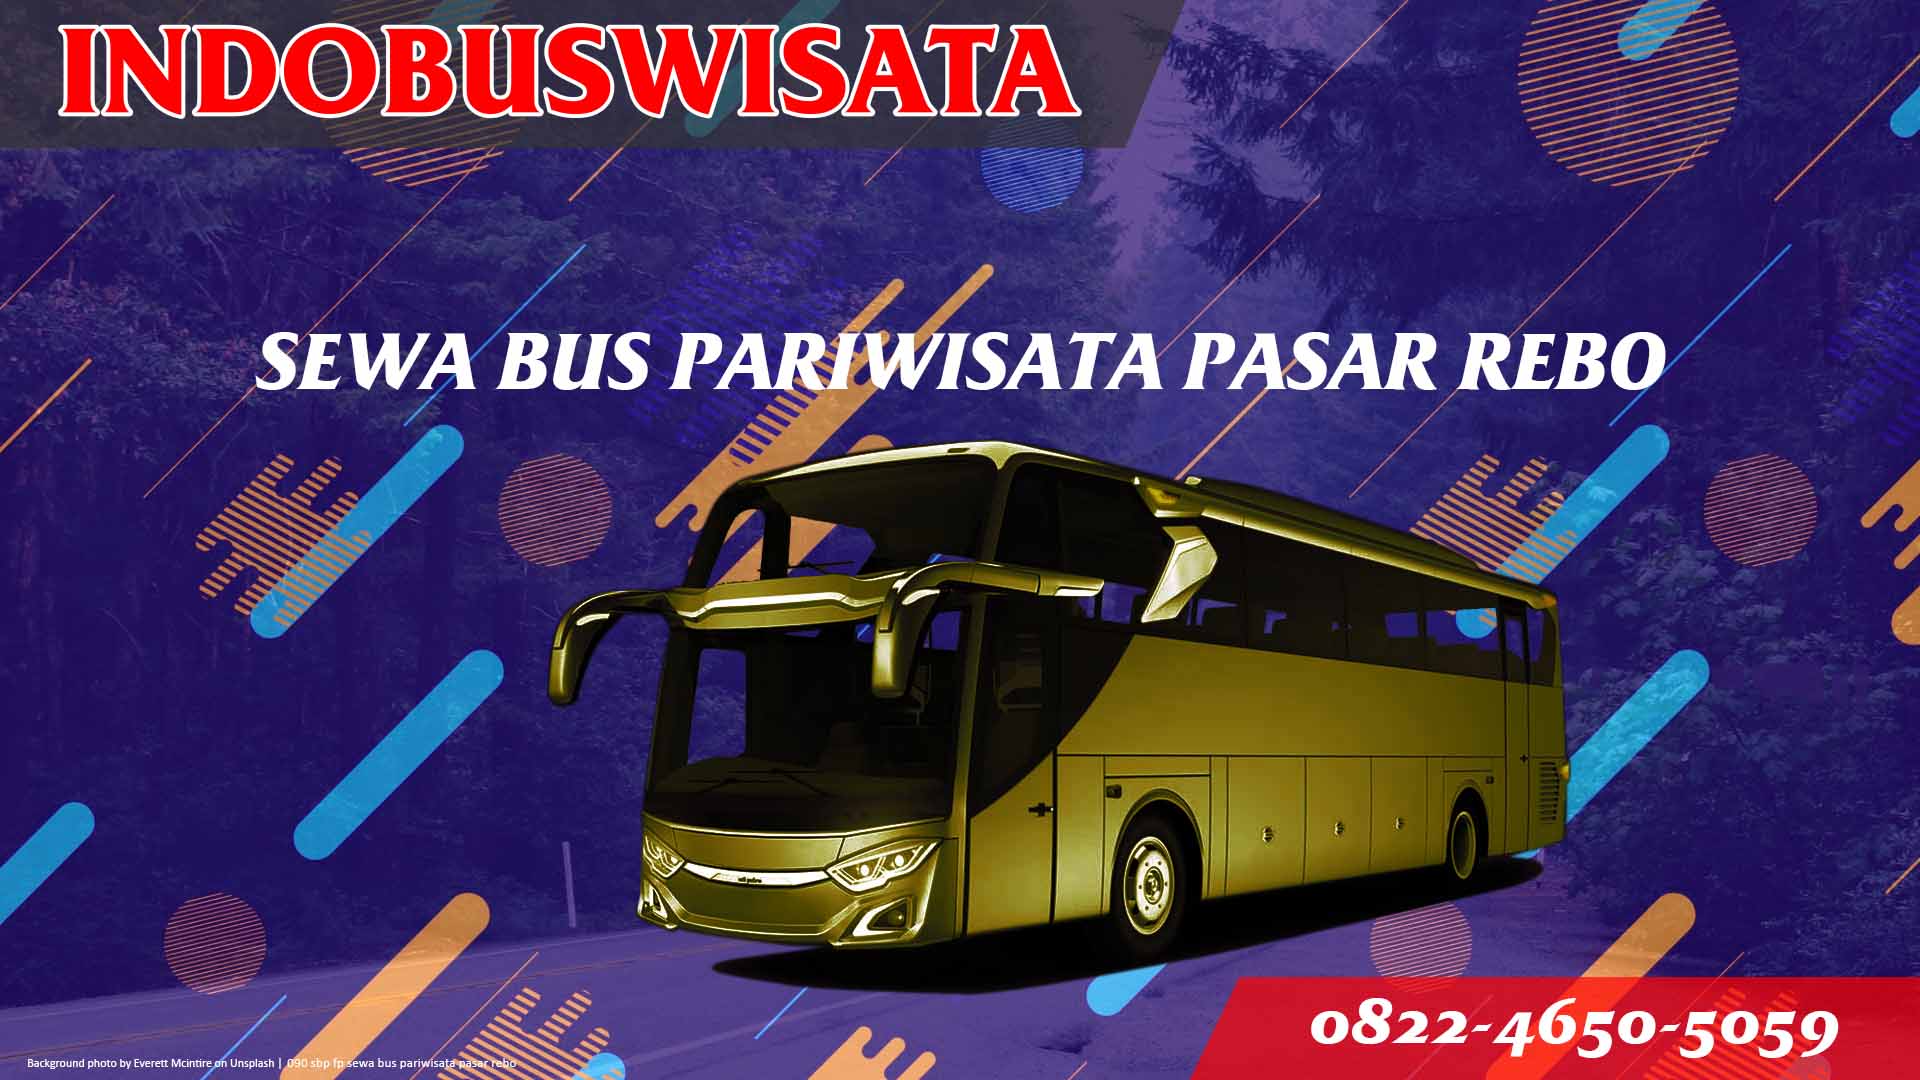 090 Sbp Fp Sewa Bus Pariwisata Pasar Rebo Indobuswisata